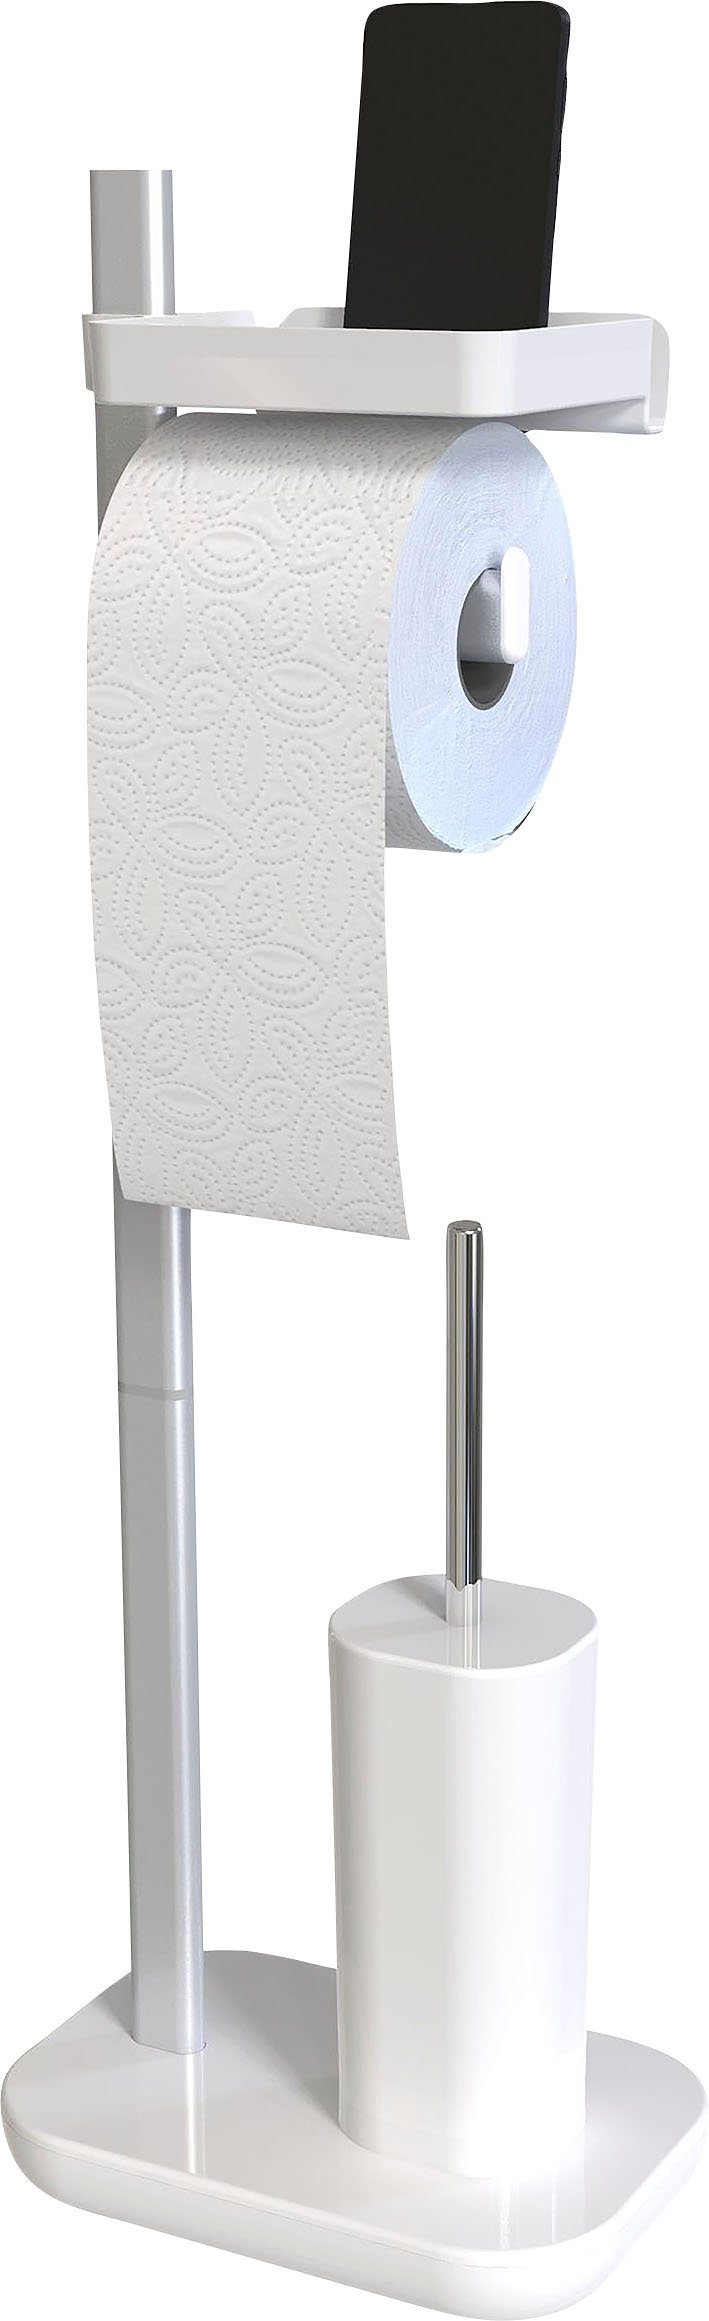 Bischof Toilettenpapierhalter, mit Ablageschale, Schmuck für Armbanduhr, cm, 9 12 x